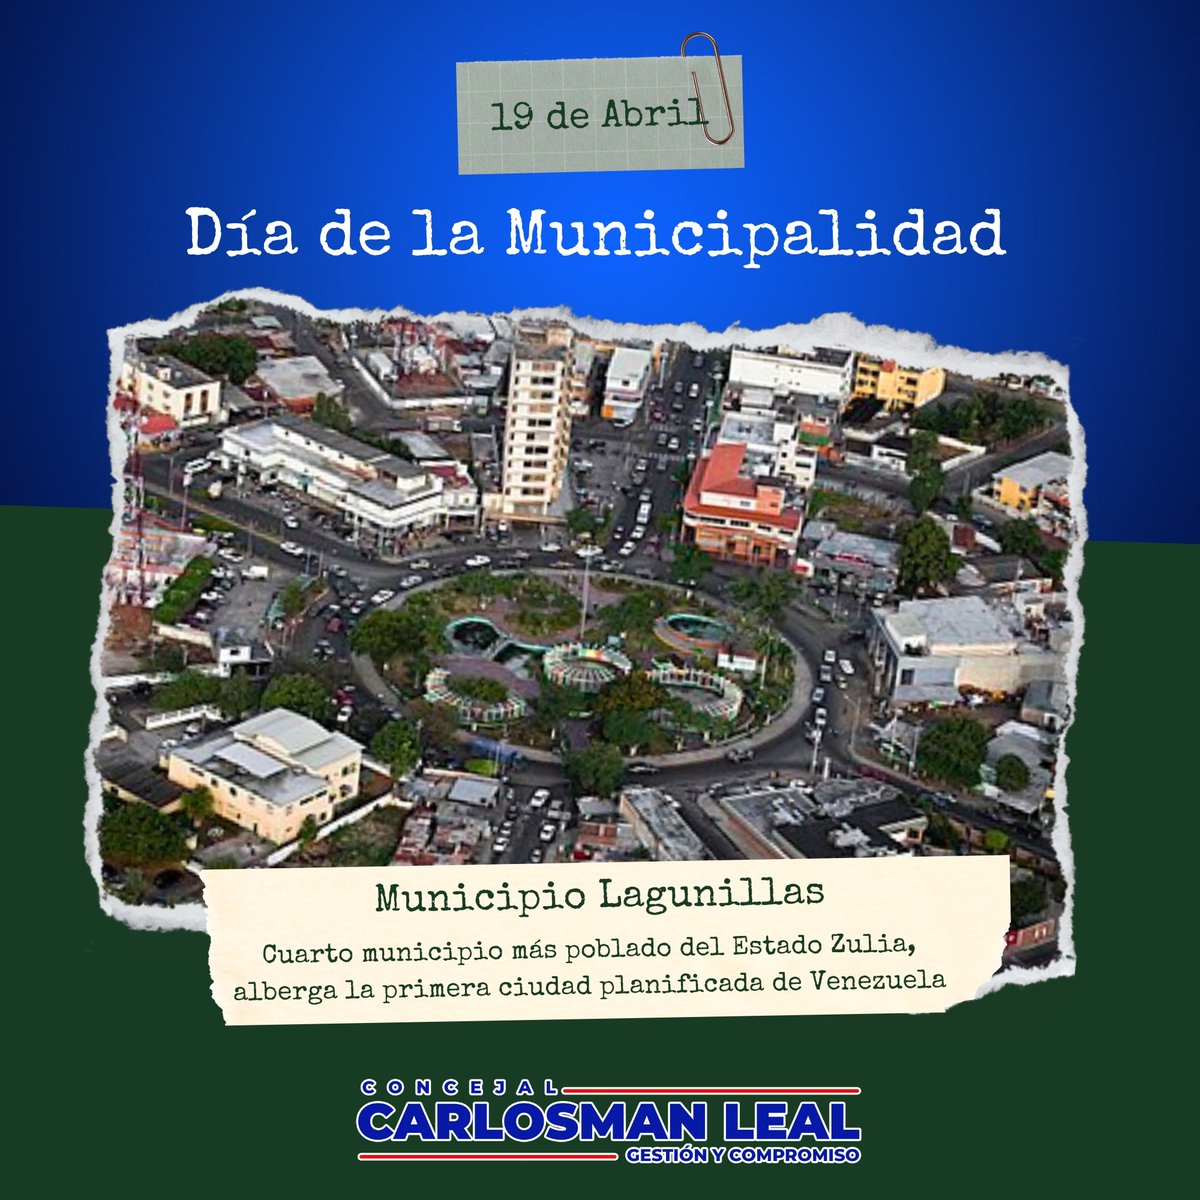 Lagunillas, hoy en el marco de la celebración del día de la Municipalidad, reafirmamos nuestro compromiso de seguir trabajando por devolverte la luz que te fue arrebatada, y que vuelvas a ser un municipio de desarrollo y progreso. #CiudadOjeda #Lagunillas #GestionyCompromiso